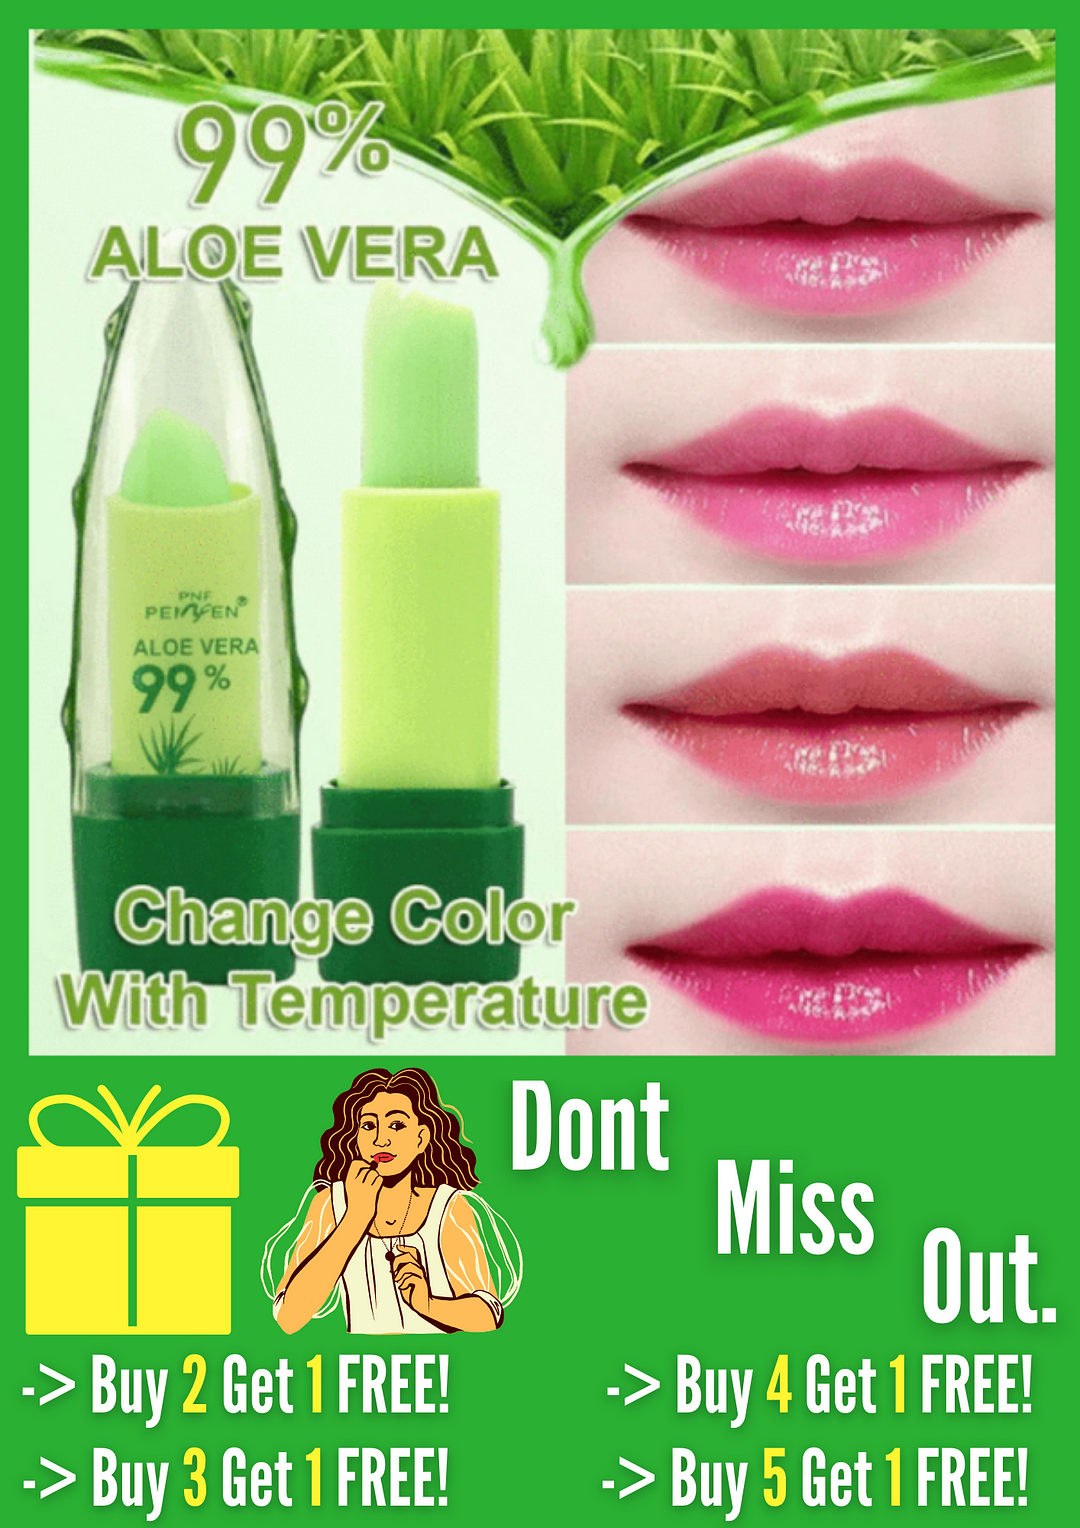 Color Changing Aloe Vera Lipstick.